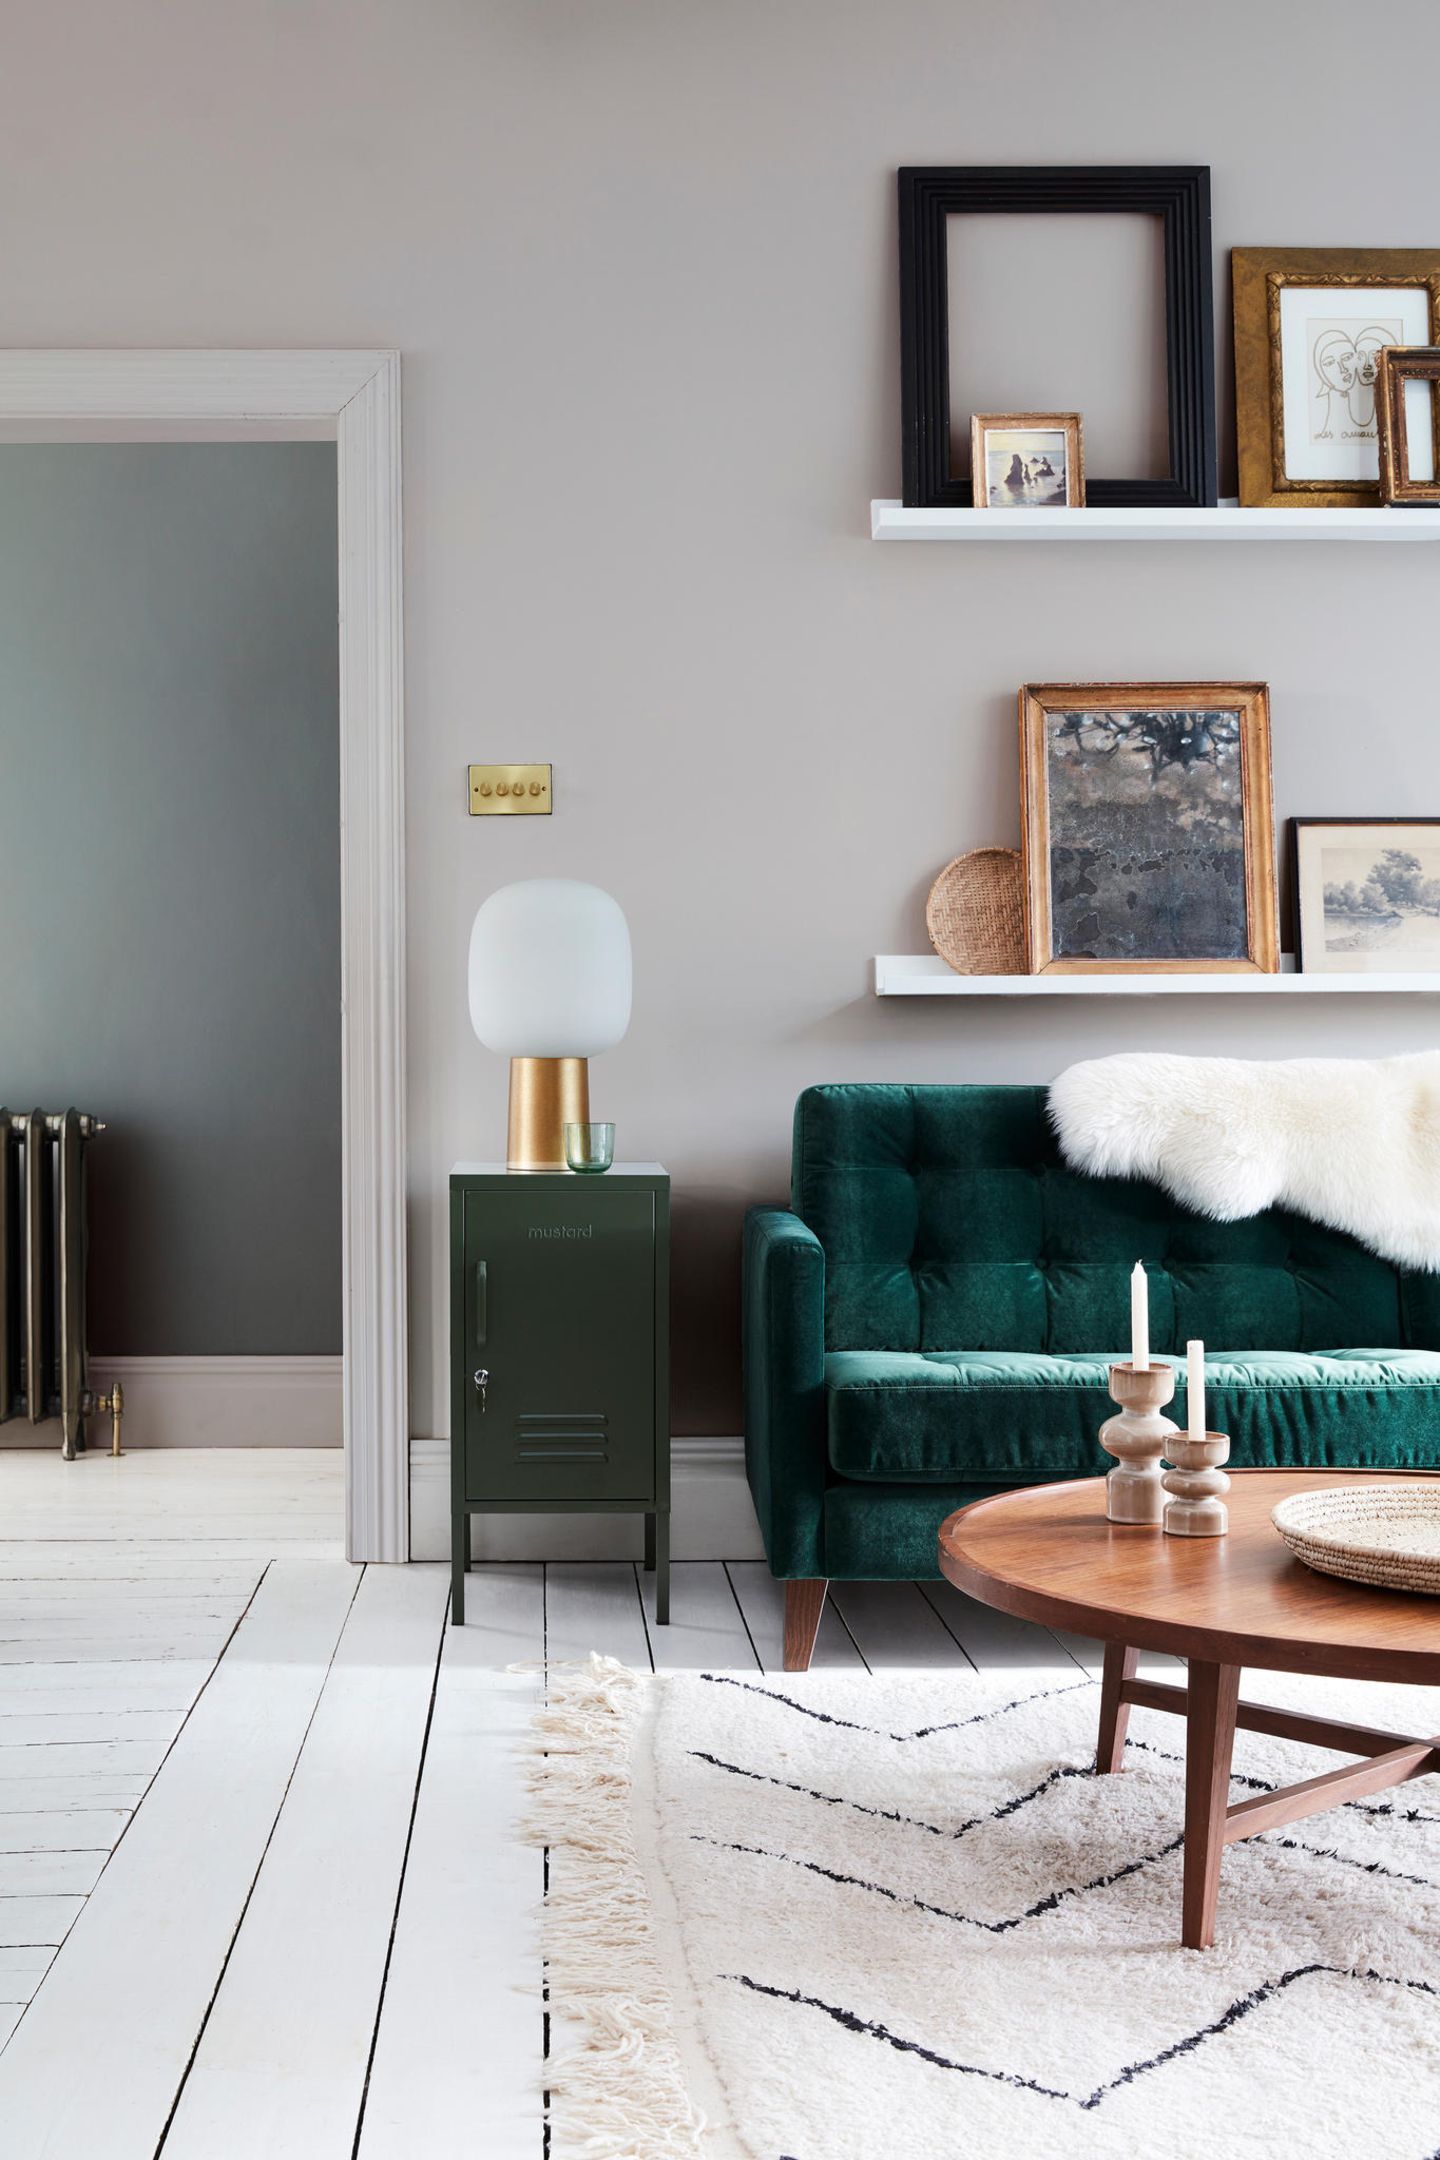 Samtgrünes Sofa in grau gestrichenem Wohnzimmer mit Schafsfell und Bilderleisten sowie Midcentury-Holztisch